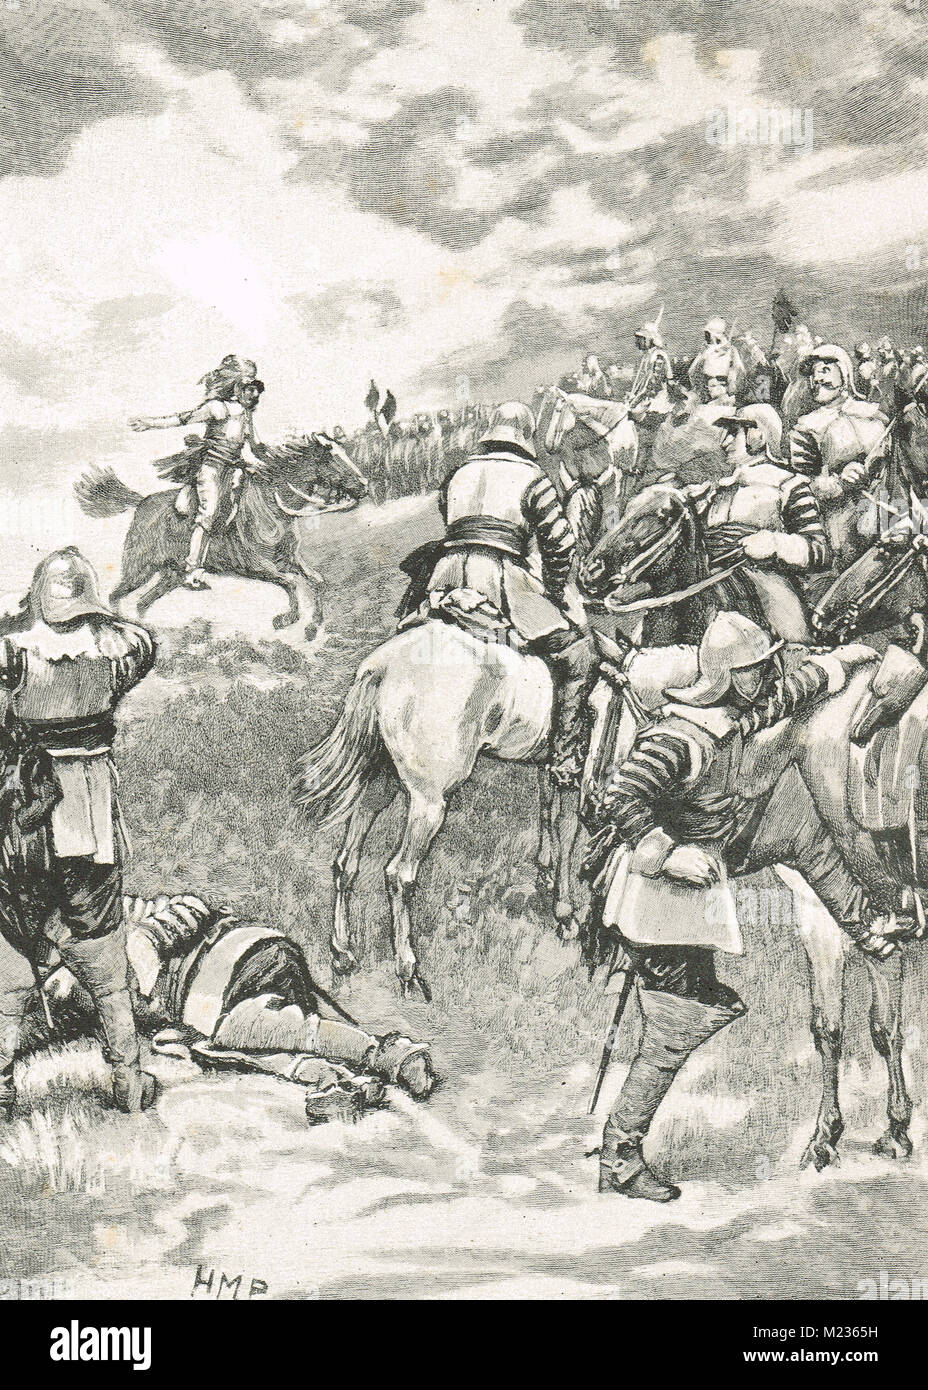 Charles I, essayant de rassembler son armée, bataille de Naseby, le 14 juin 1645 Banque D'Images